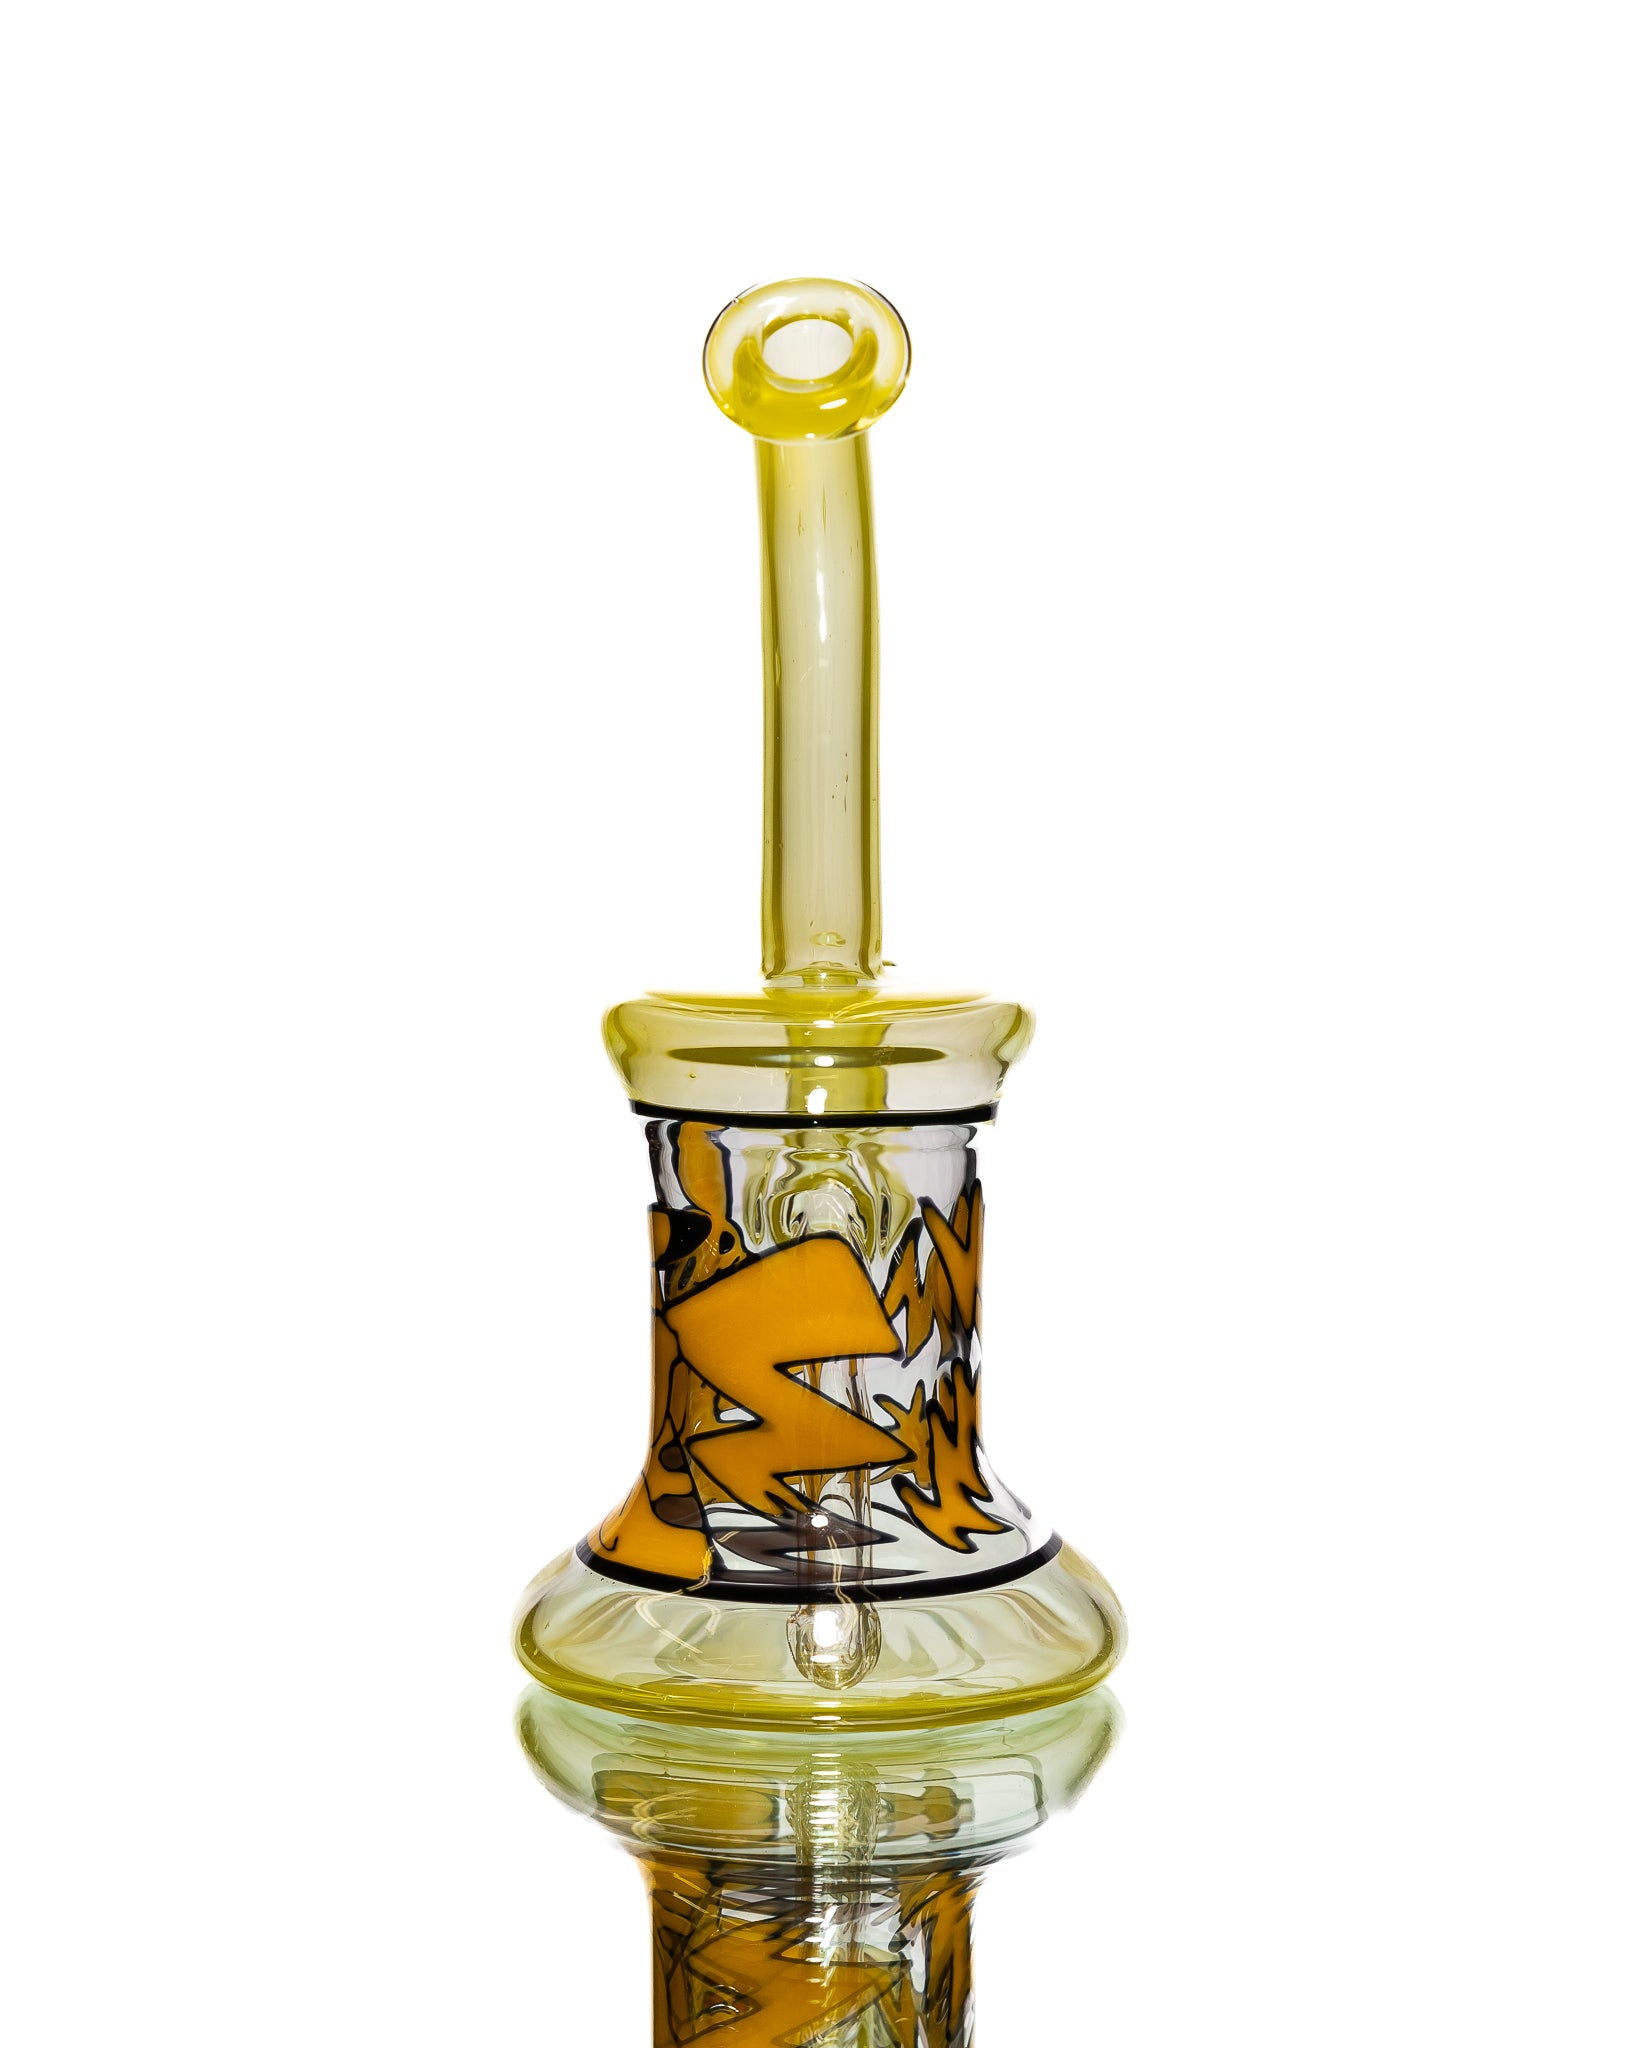 Windstar Glass - Pikachu Bent Jammer